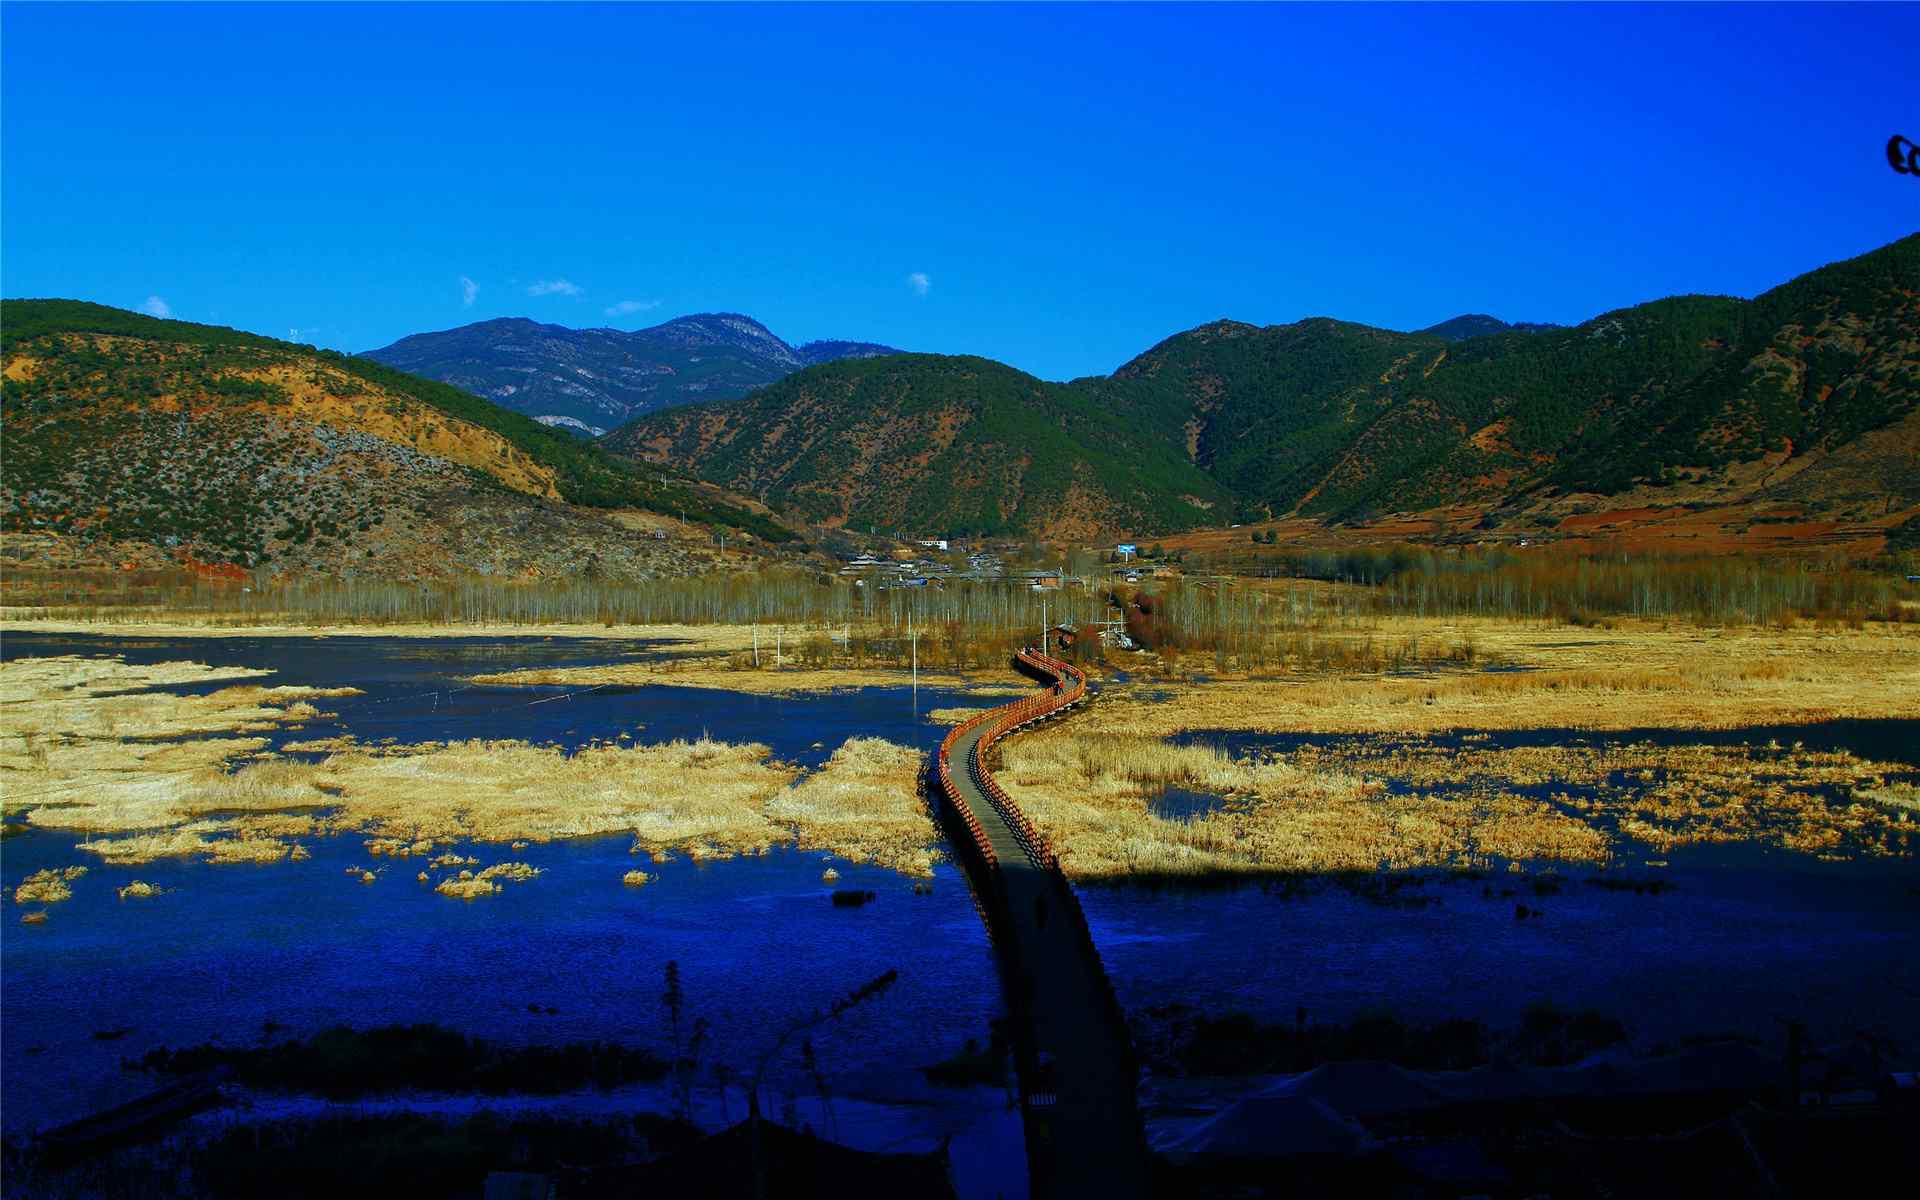 泸沽湖走婚桥蔚蓝色风景图片